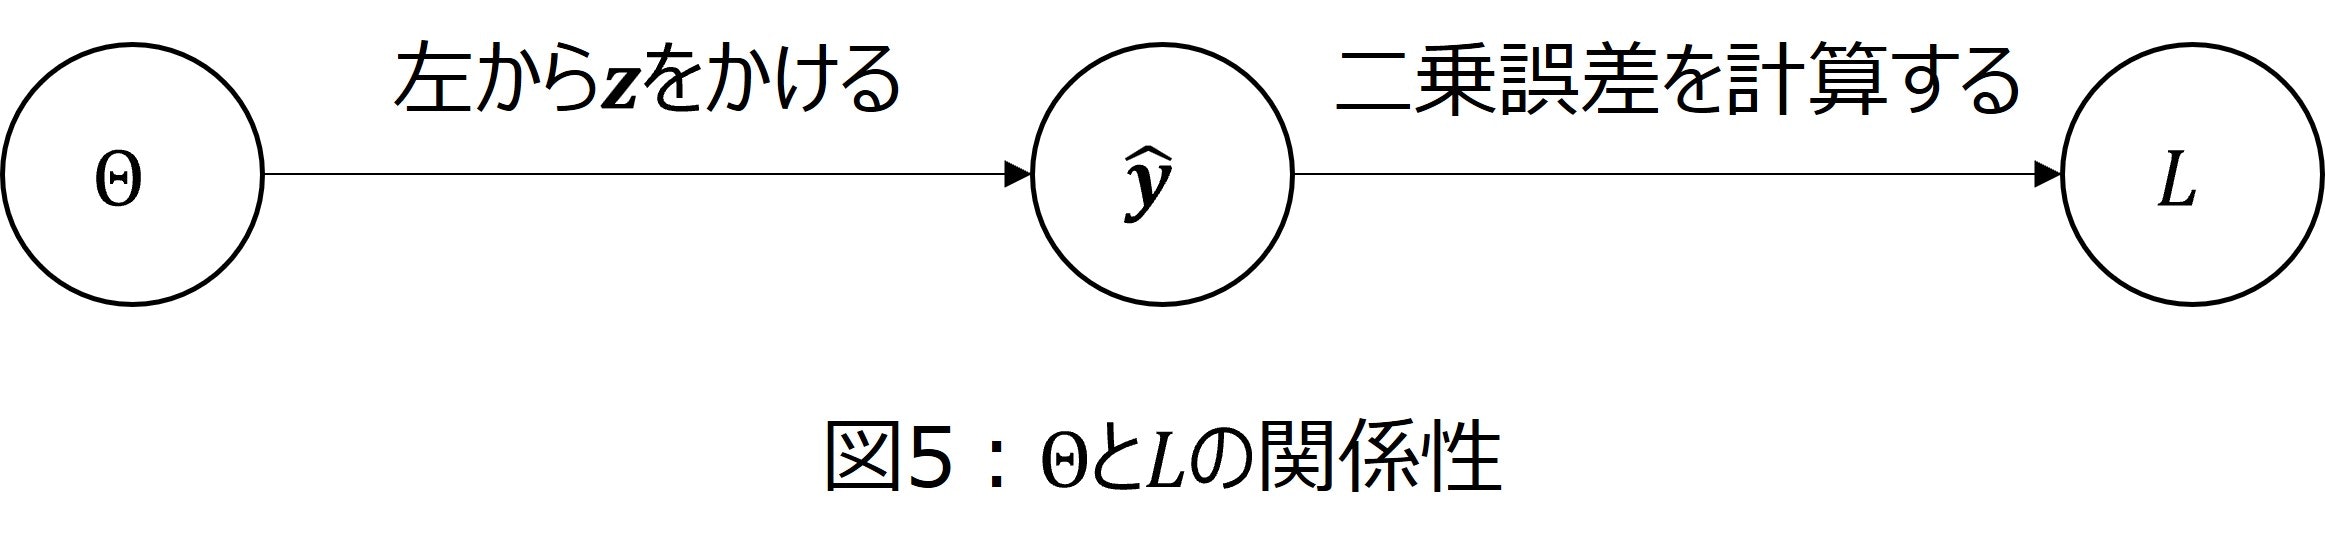 図5_thetaと損失関数の関係.jpg